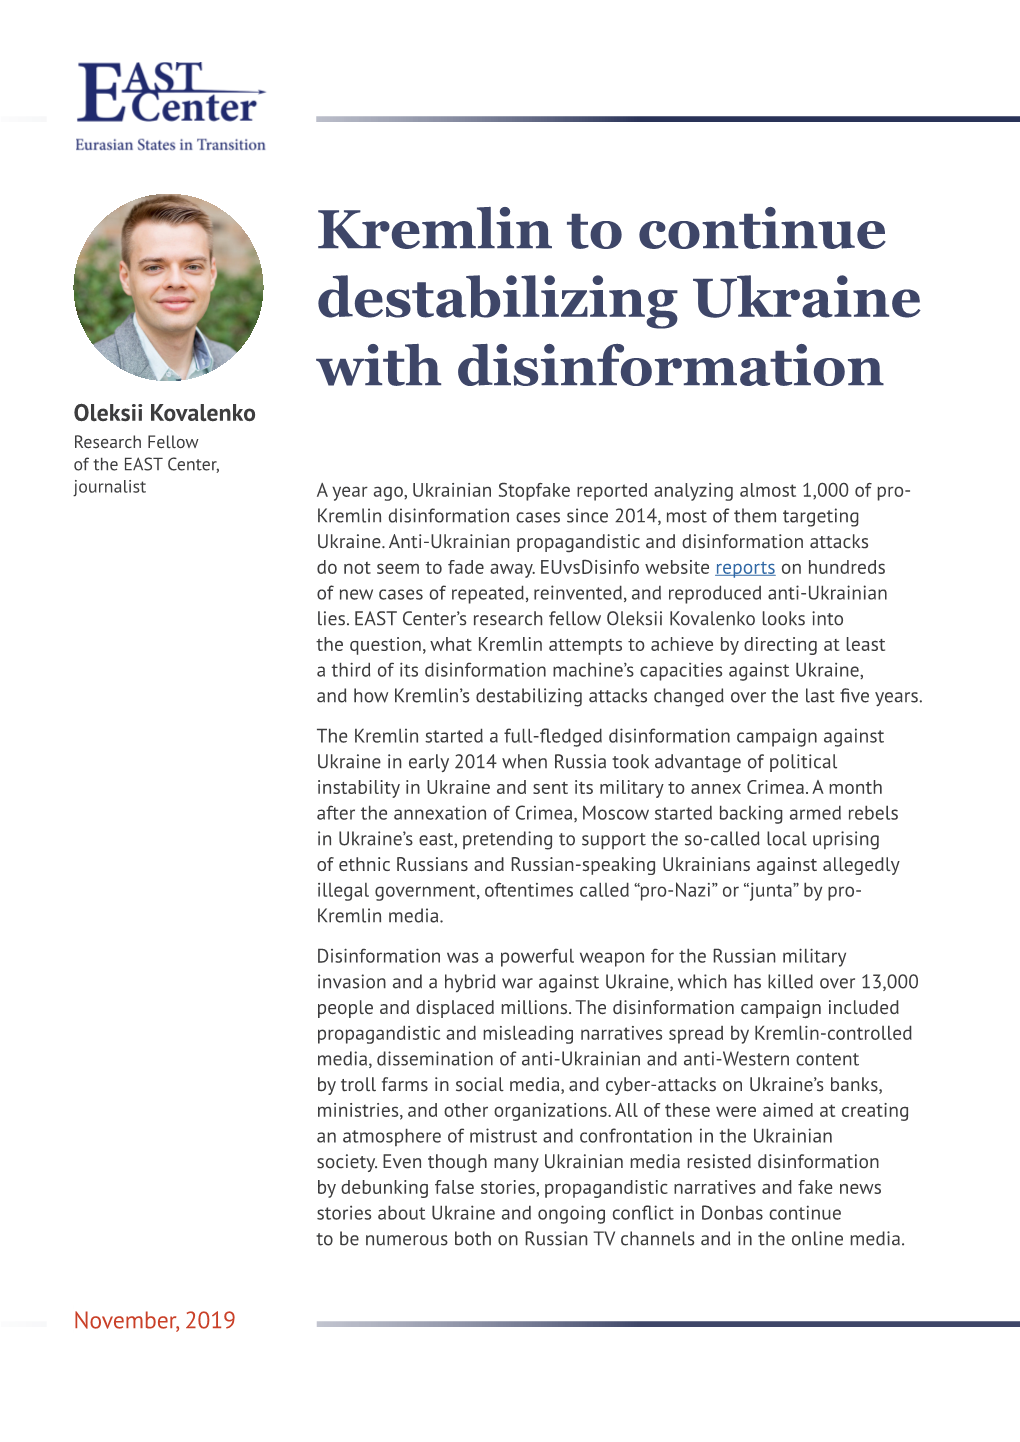 Kremlin to Continue Destabilizing Ukraine with Disinformation